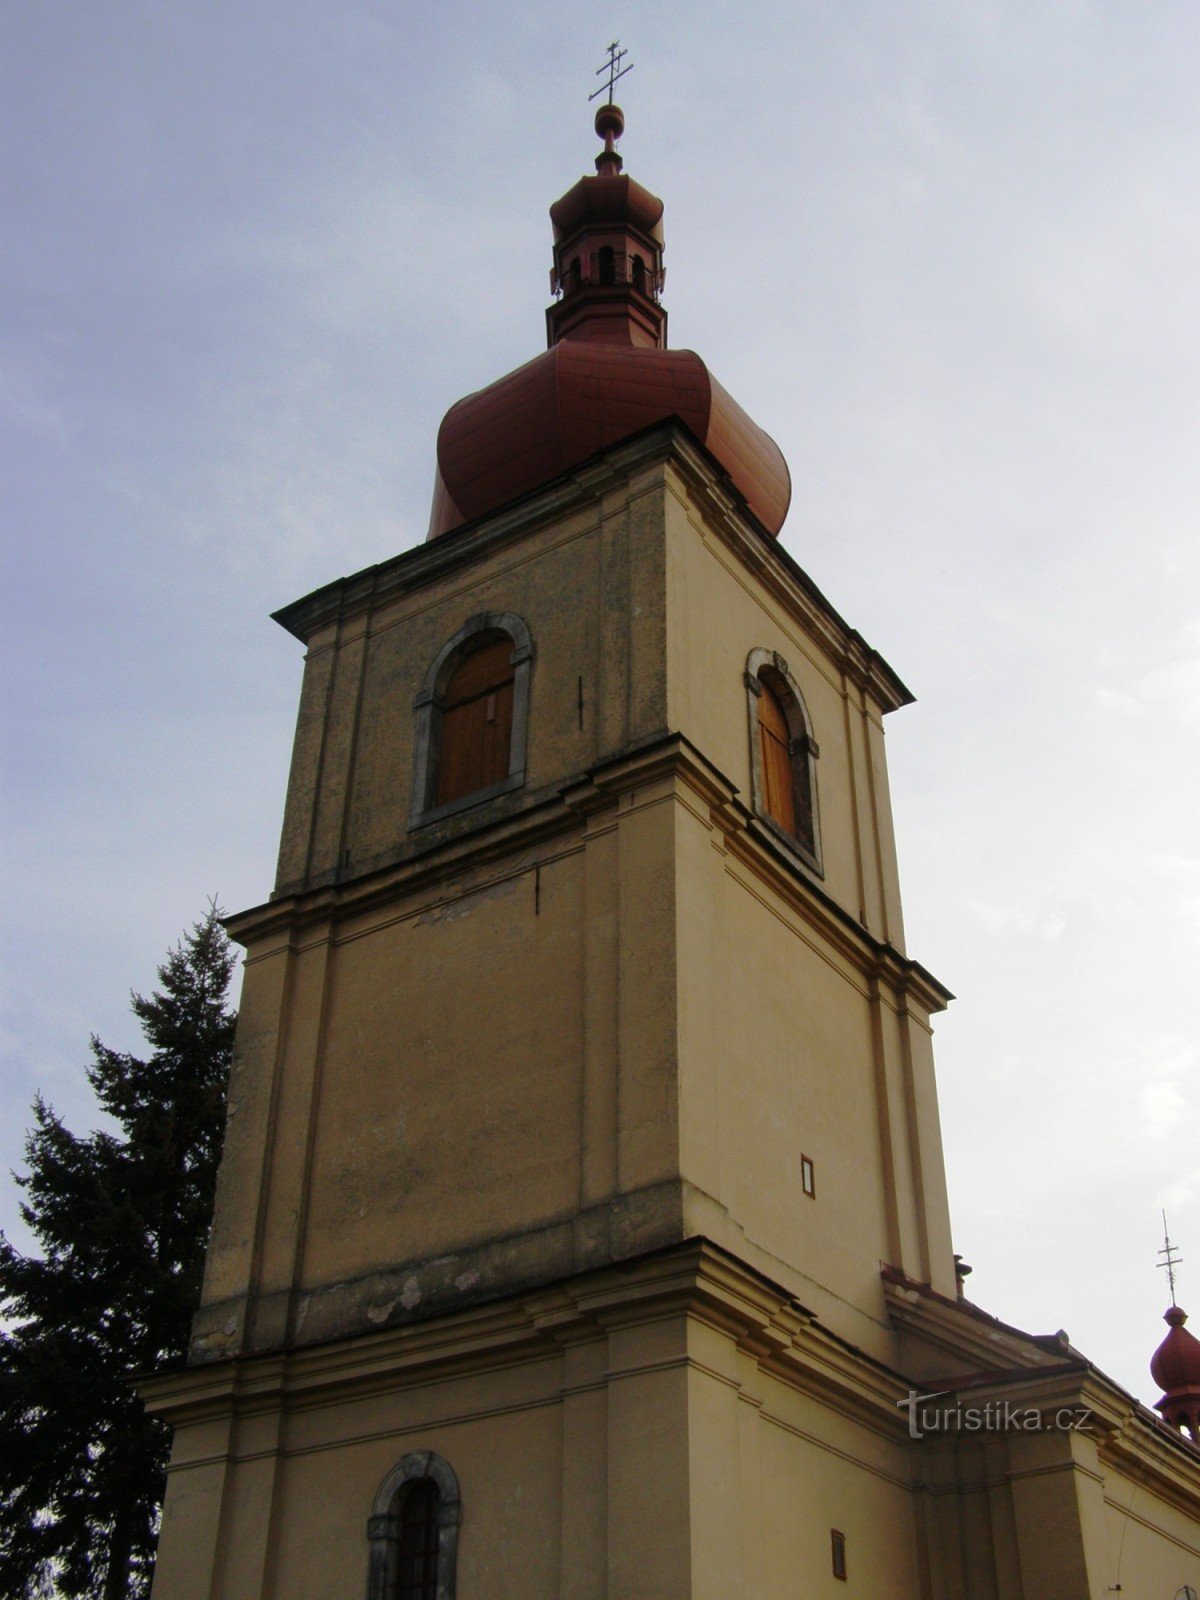 Chvalkovice - Pyhän Nikolauksen kirkko. Lilja